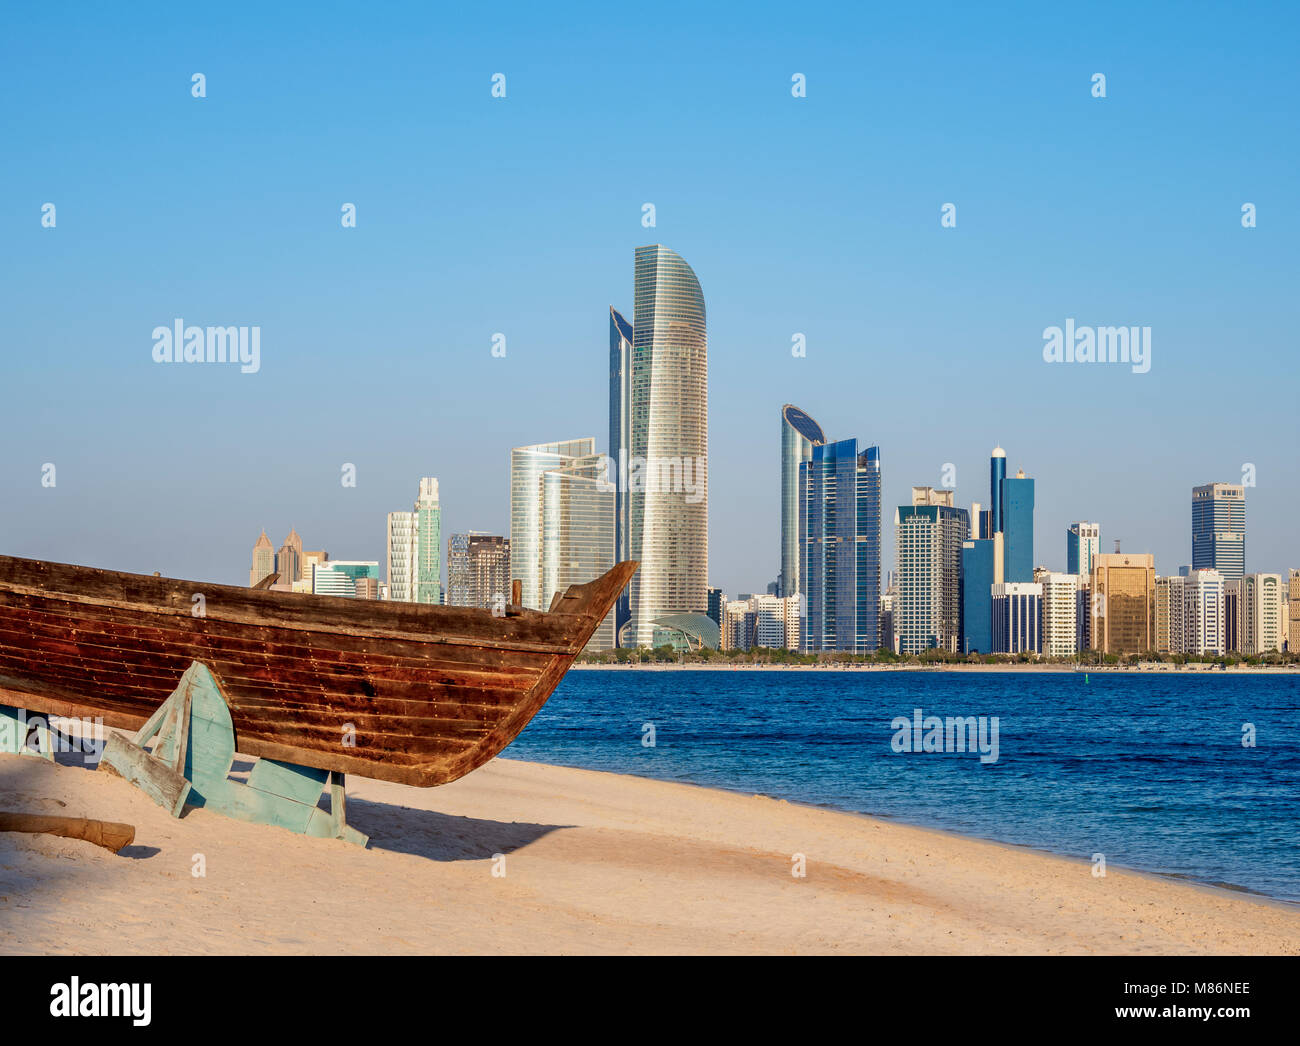 Barca tradizionale nel Villaggio del Patrimonio Culturale con lo skyline della città in background, Abu Dhabi, Emirati Arabi Uniti Foto Stock